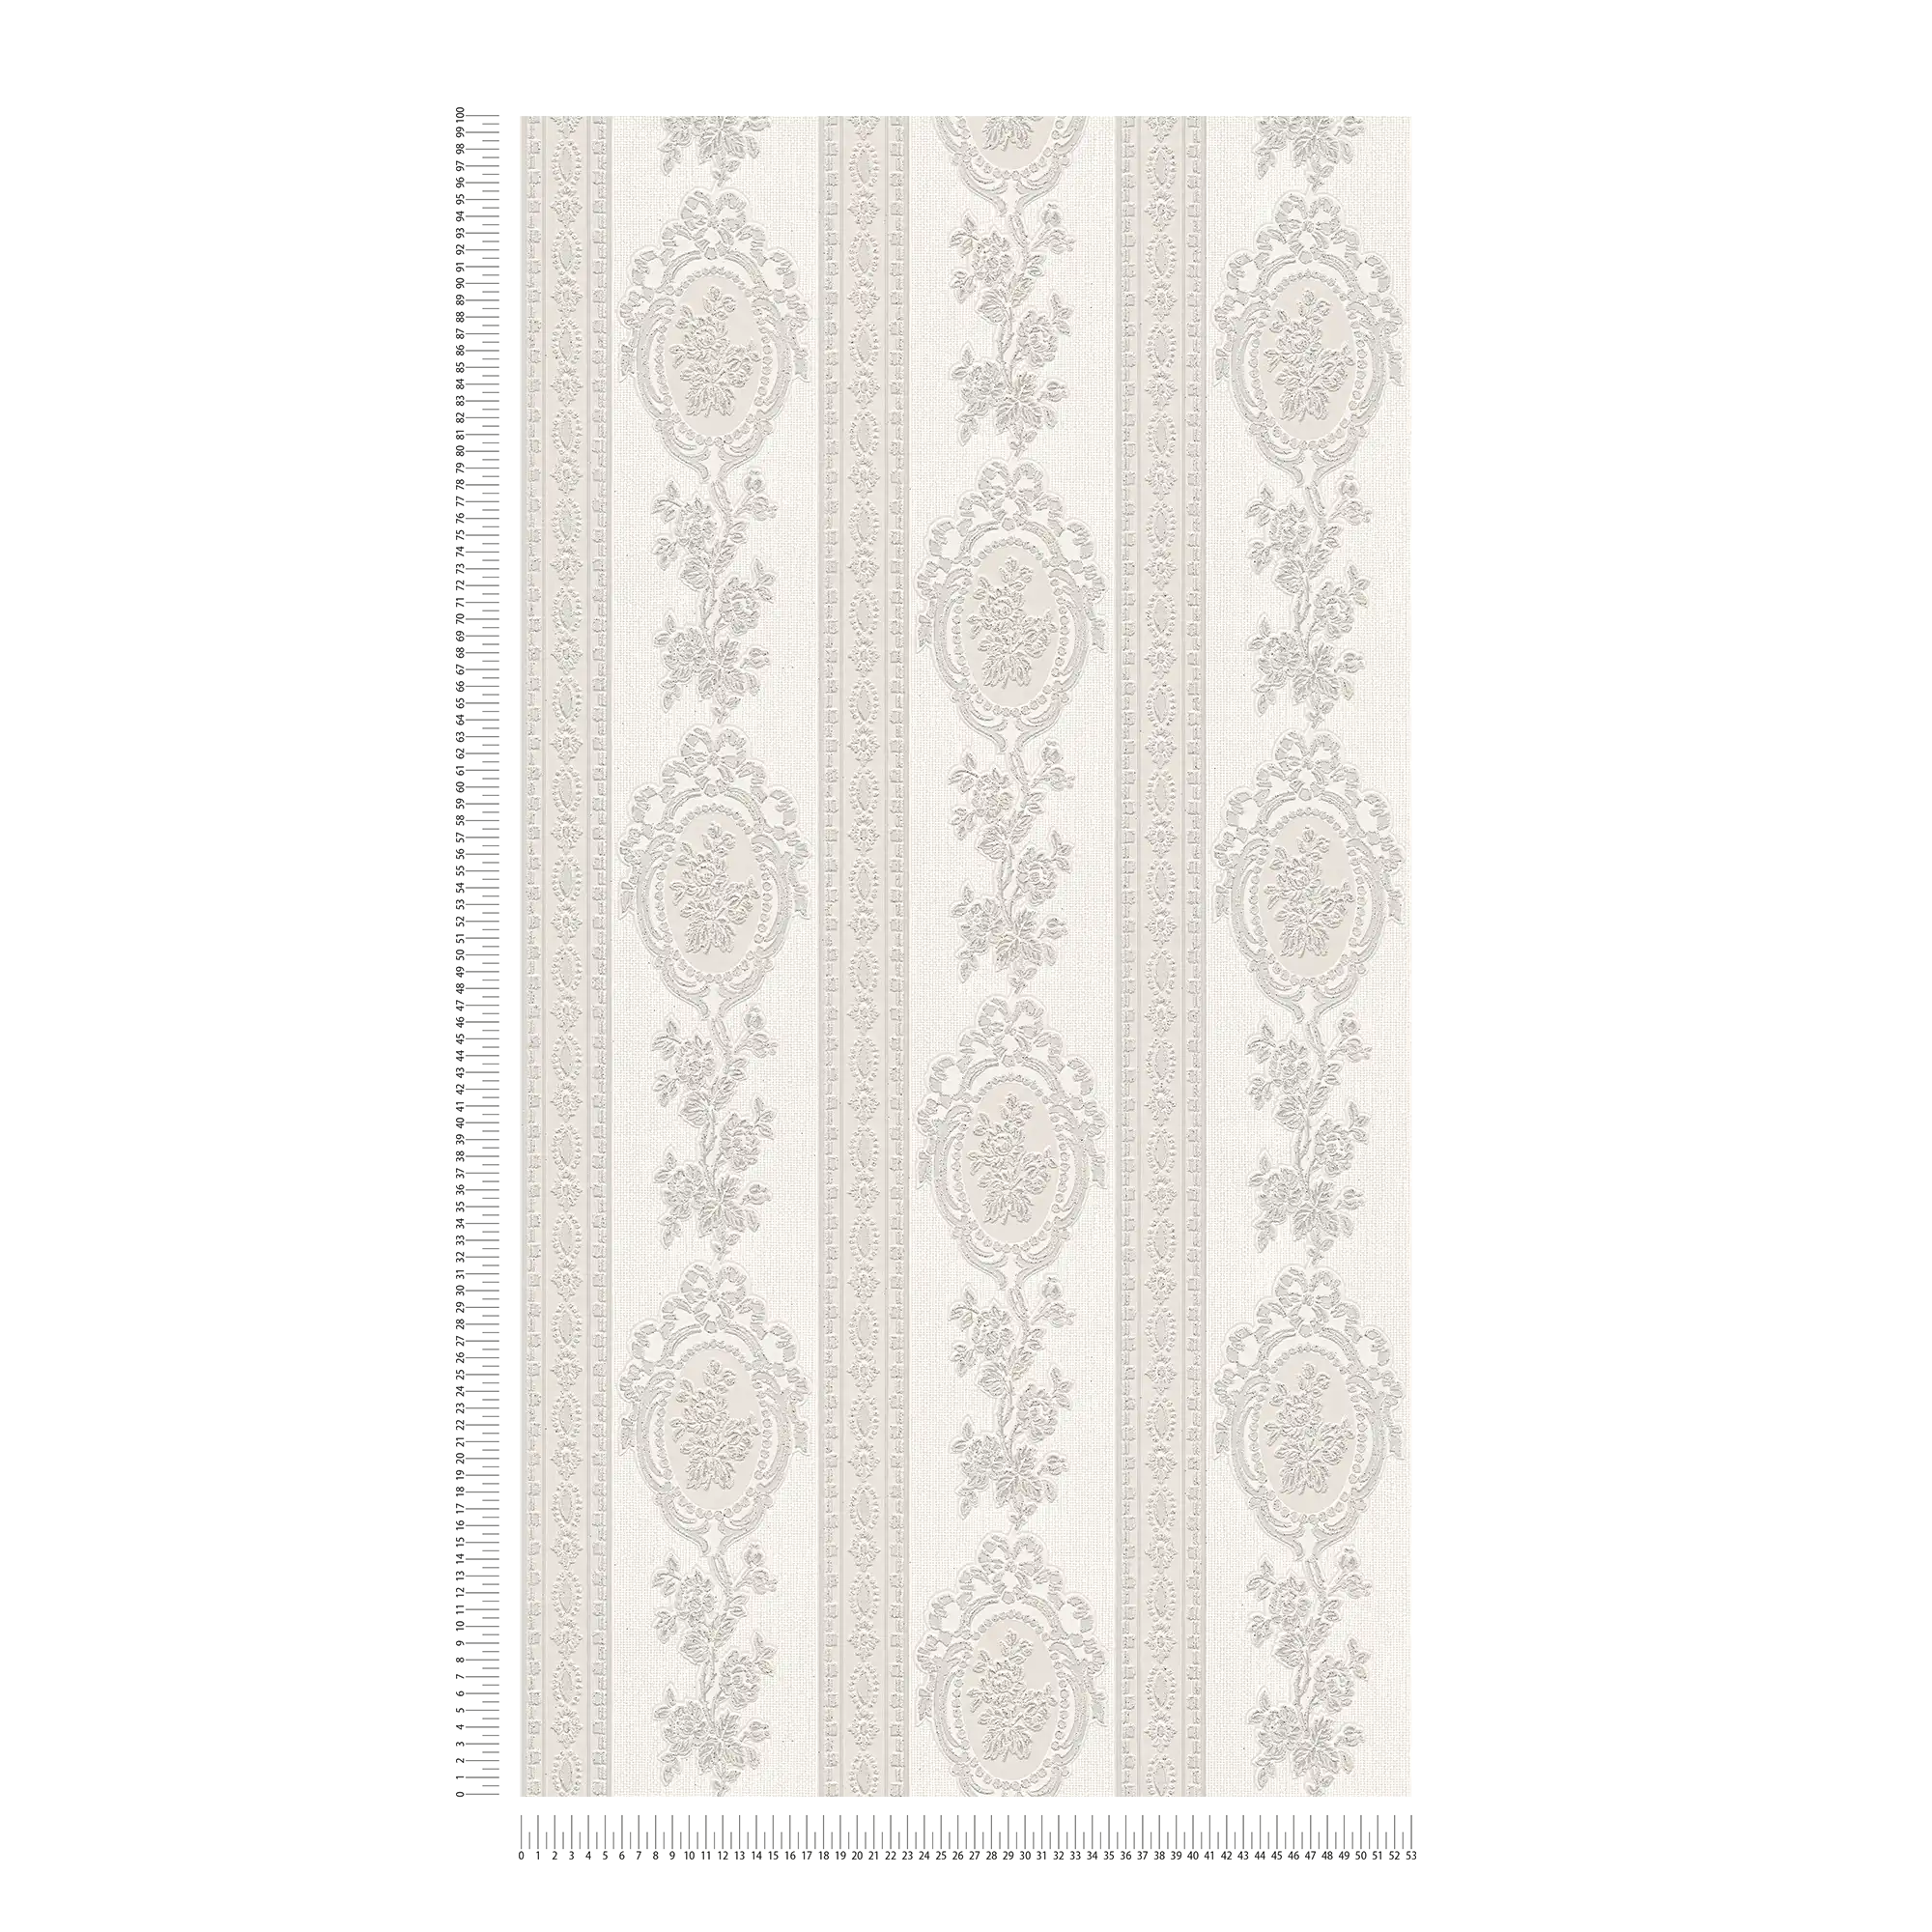             Carta da parati ornamentale elementi floreali, strisce e fiori - grigio, bianco, argento
        